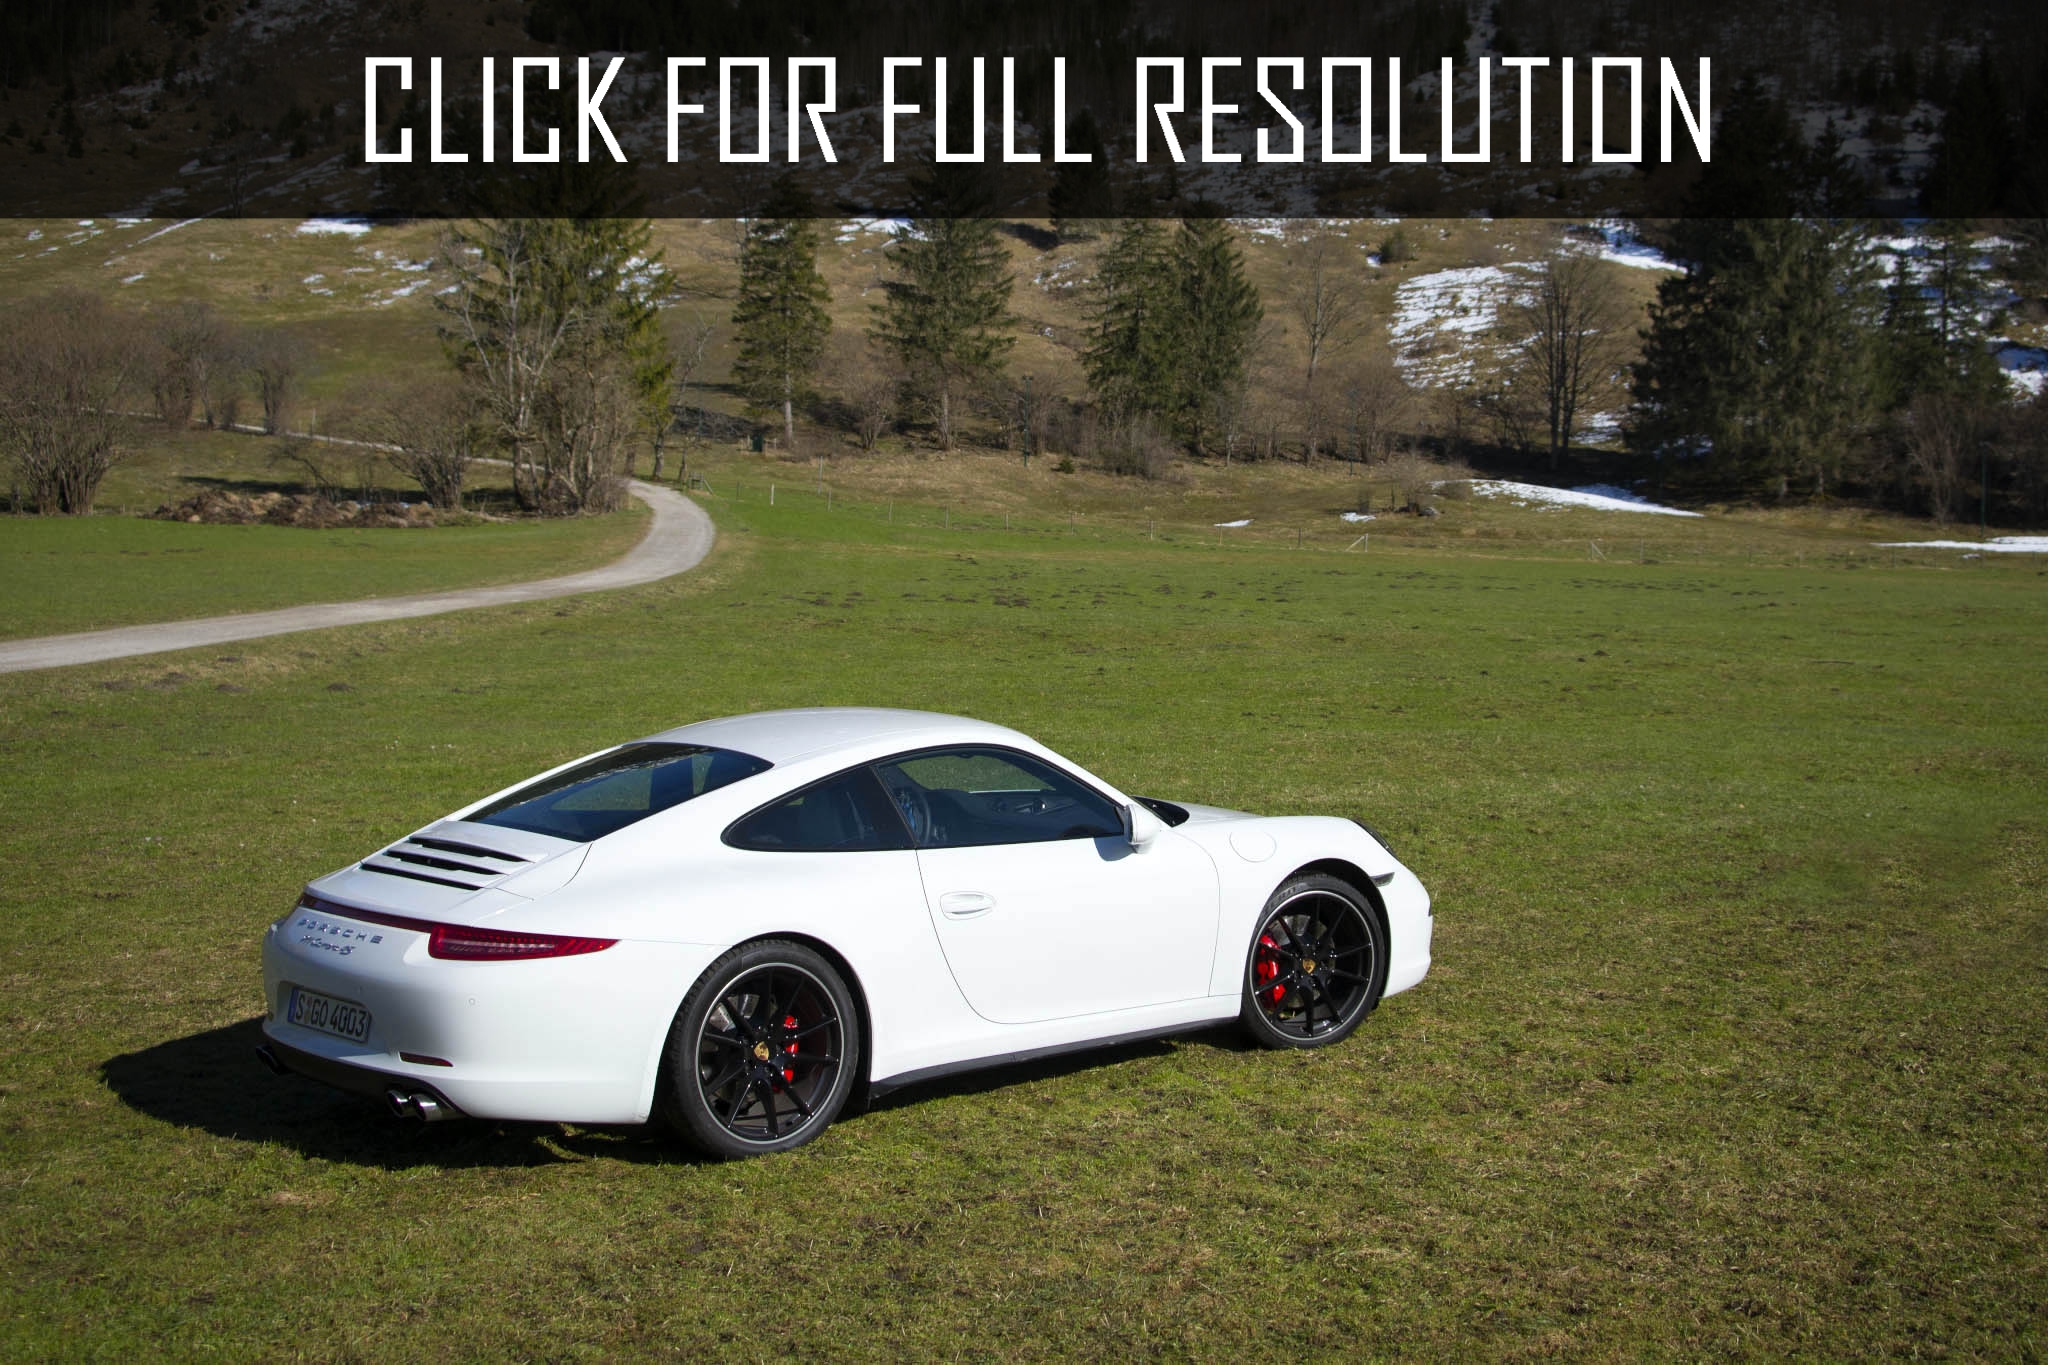 2015 Porsche 911 4S